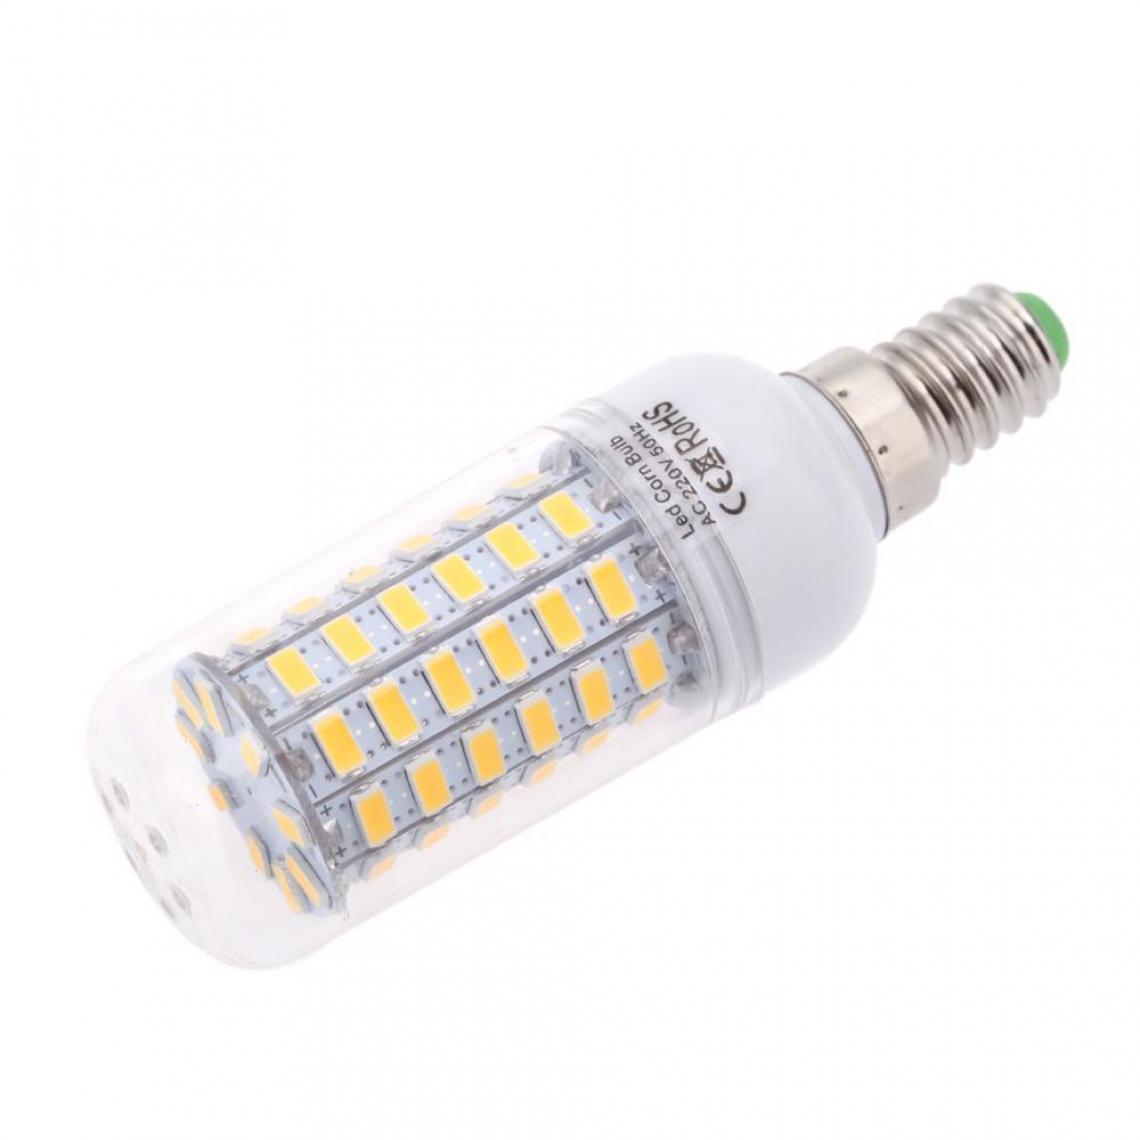 Justgreenbox - Ampoule de maïs à économie d'énergie 360 degrés 200-240V E14, Cold Blanc, 12W - Ampoules LED